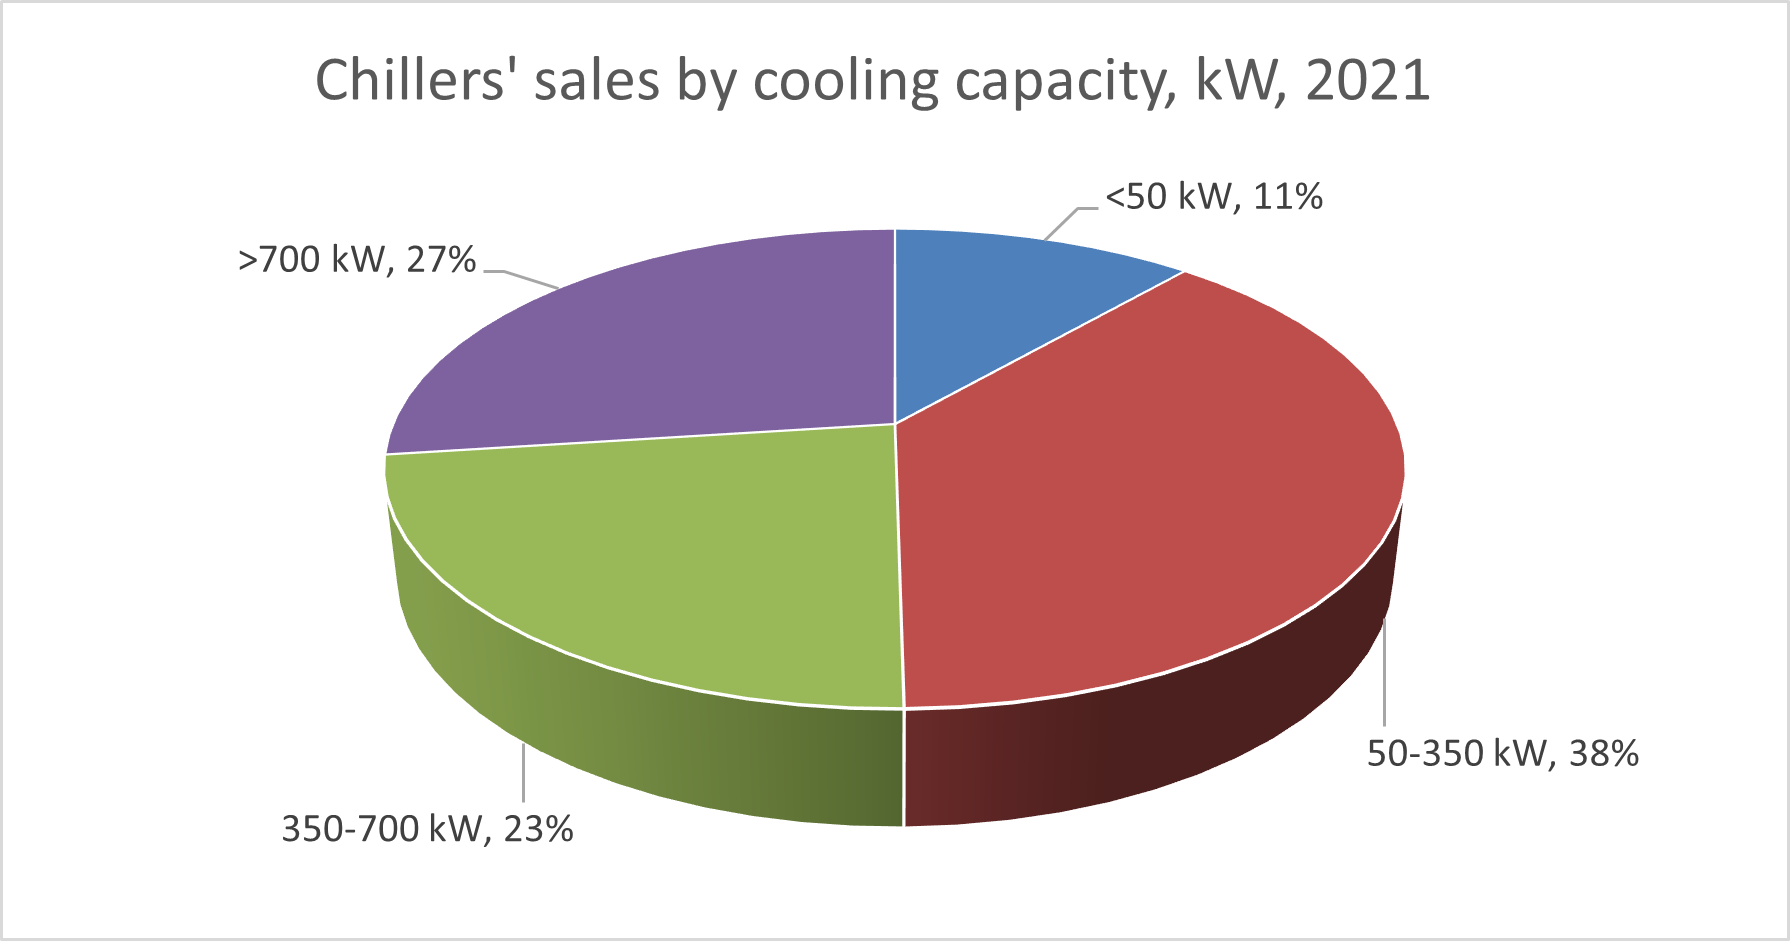 Продажи чиллеров по холодопроизводительности (в процентах в кВт), ЕС 28 - 2021 г., по данным Eurovent Market intelligence